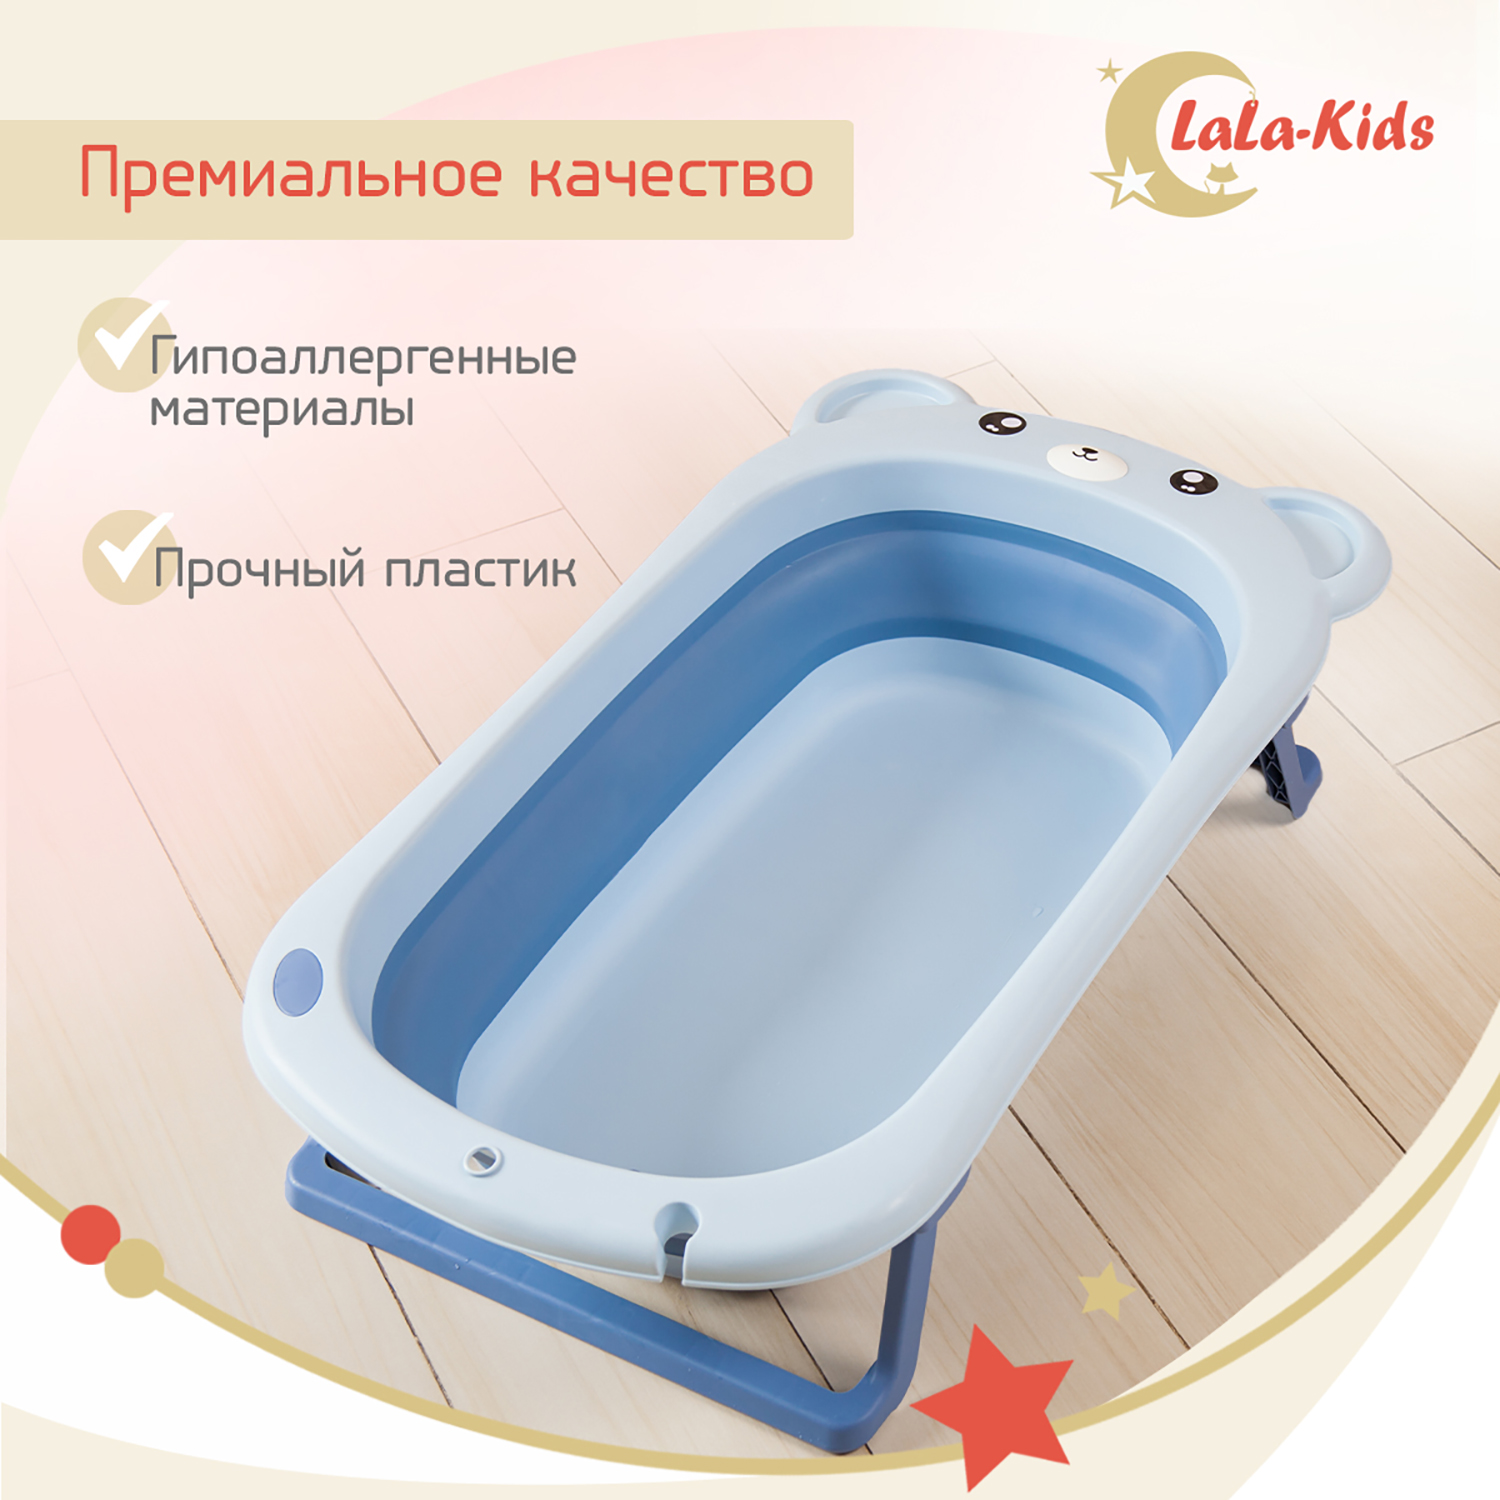 Ванночка для новорожденных LaLa-Kids складная с матрасиком ярко-голубым в комплекте - фото 9